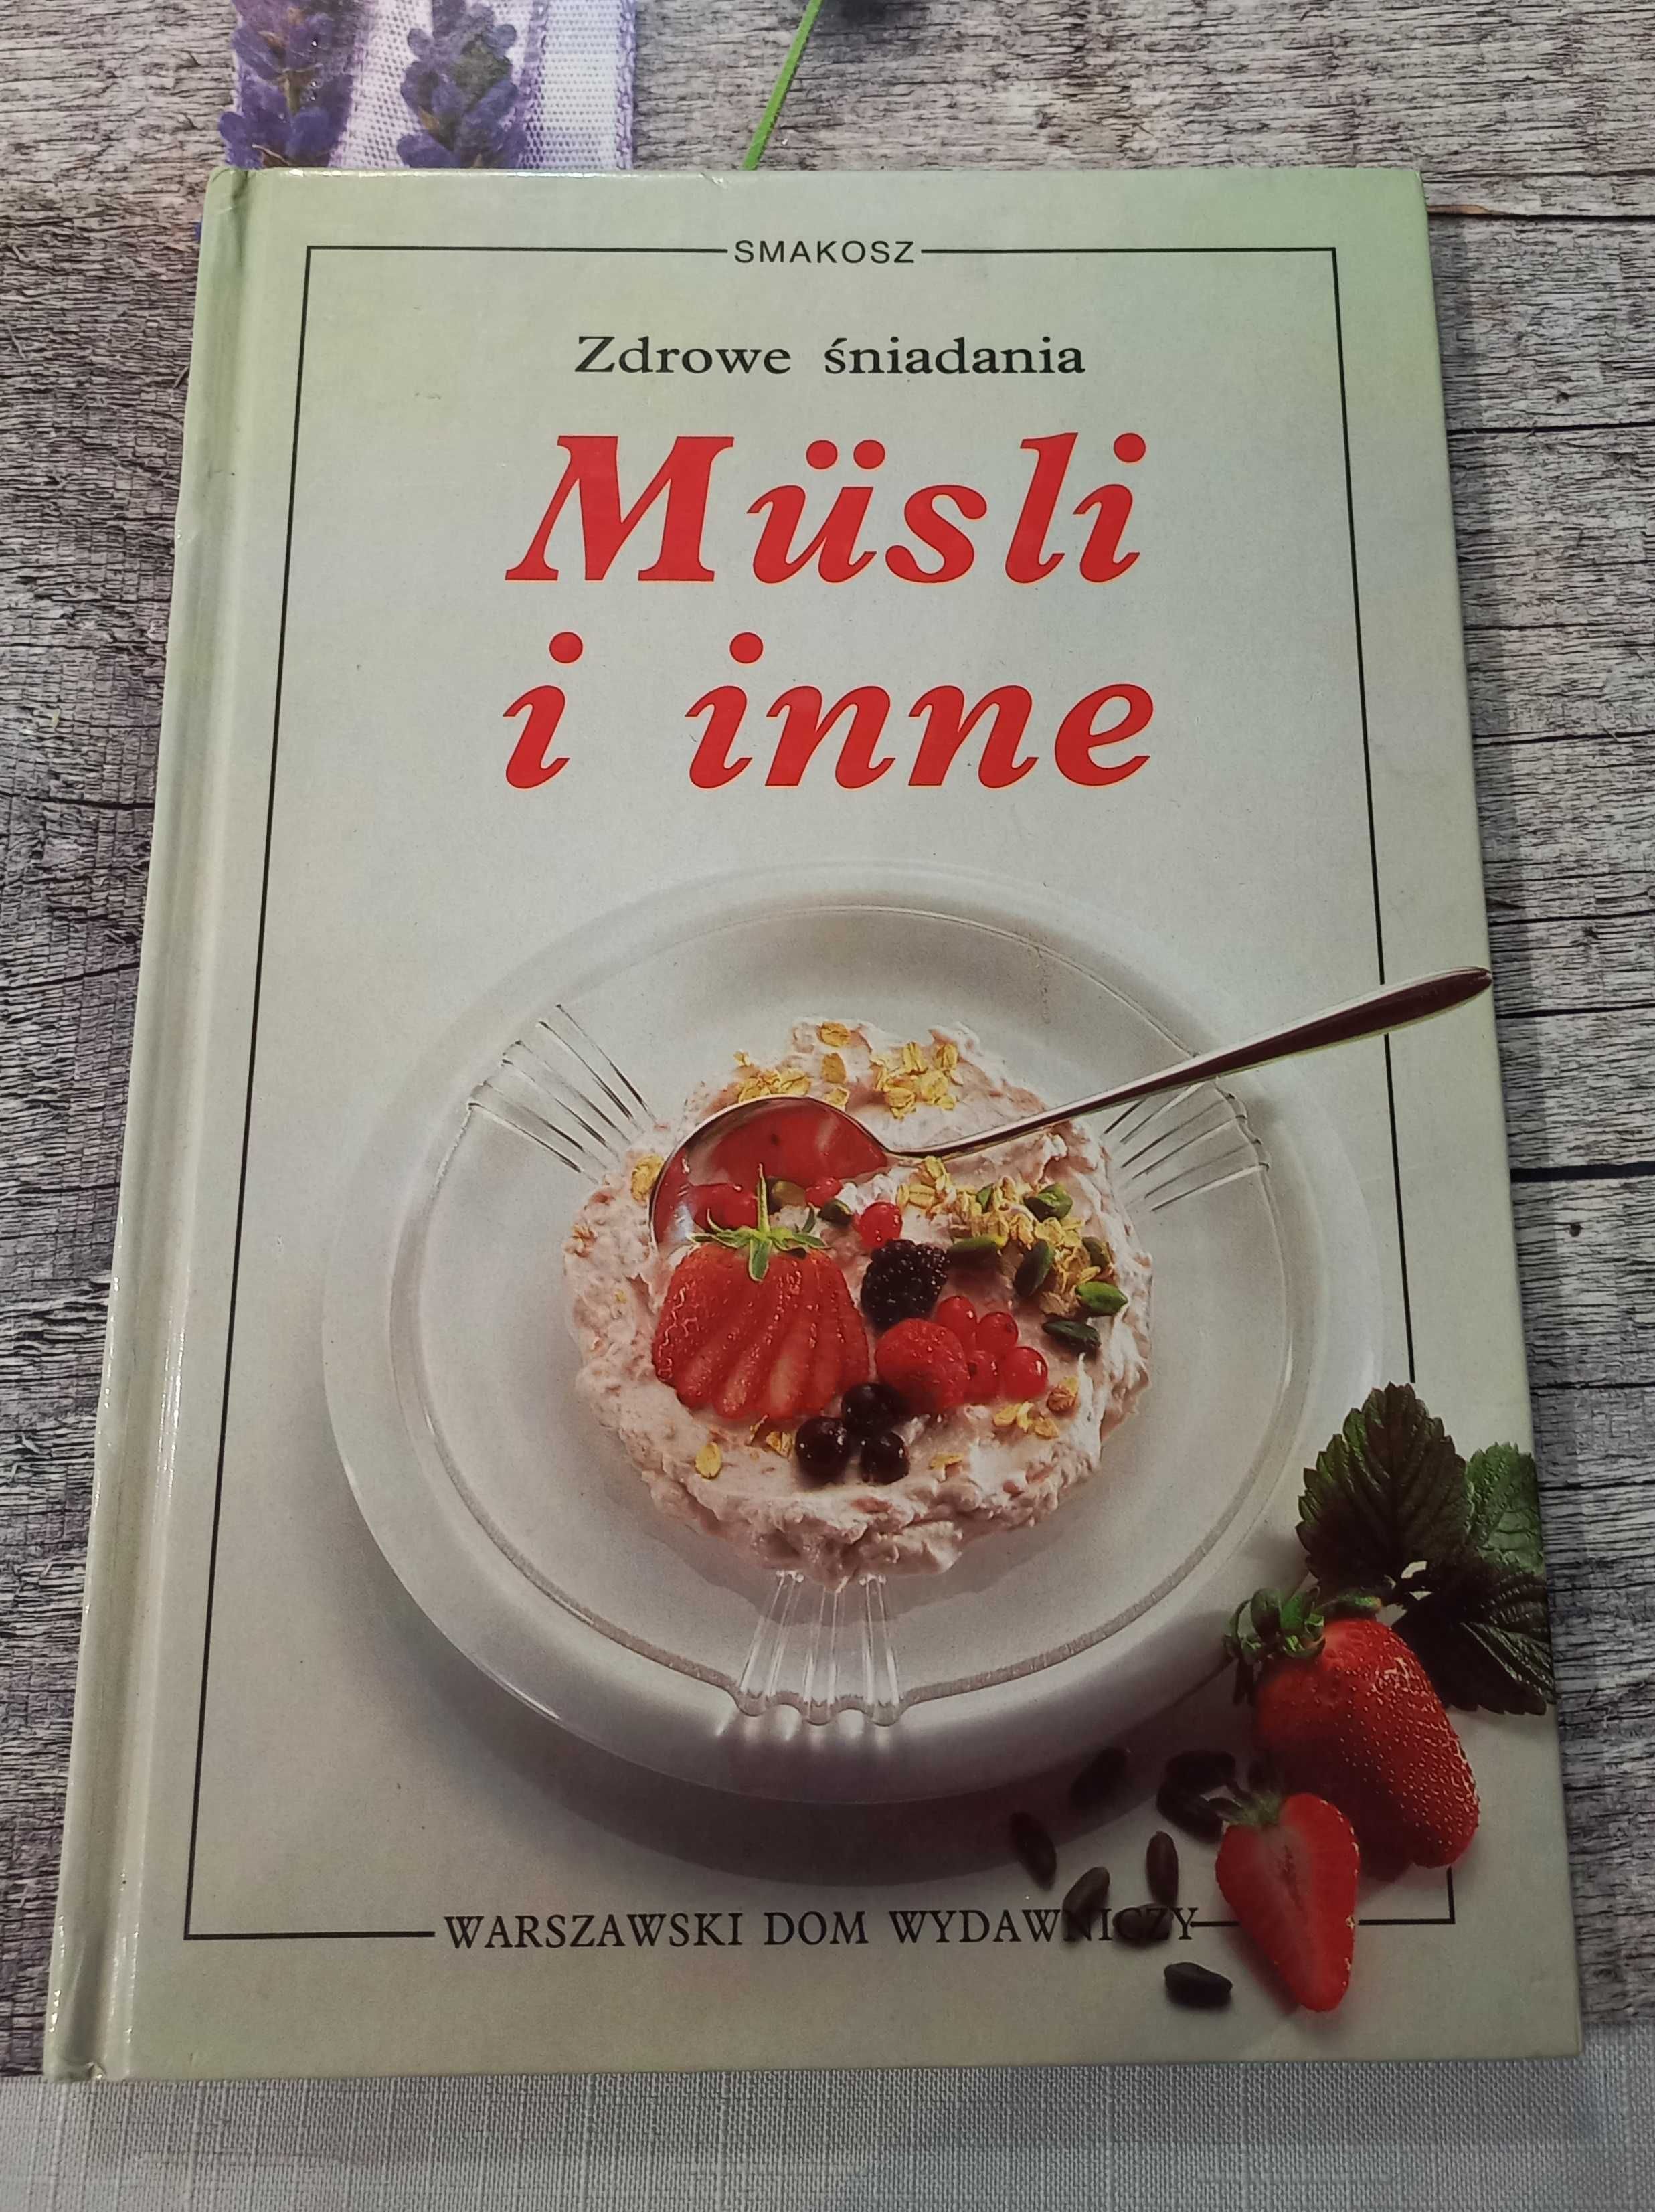 Książka "Zdrowe śniadania - musli i inne" SMAKOSZ